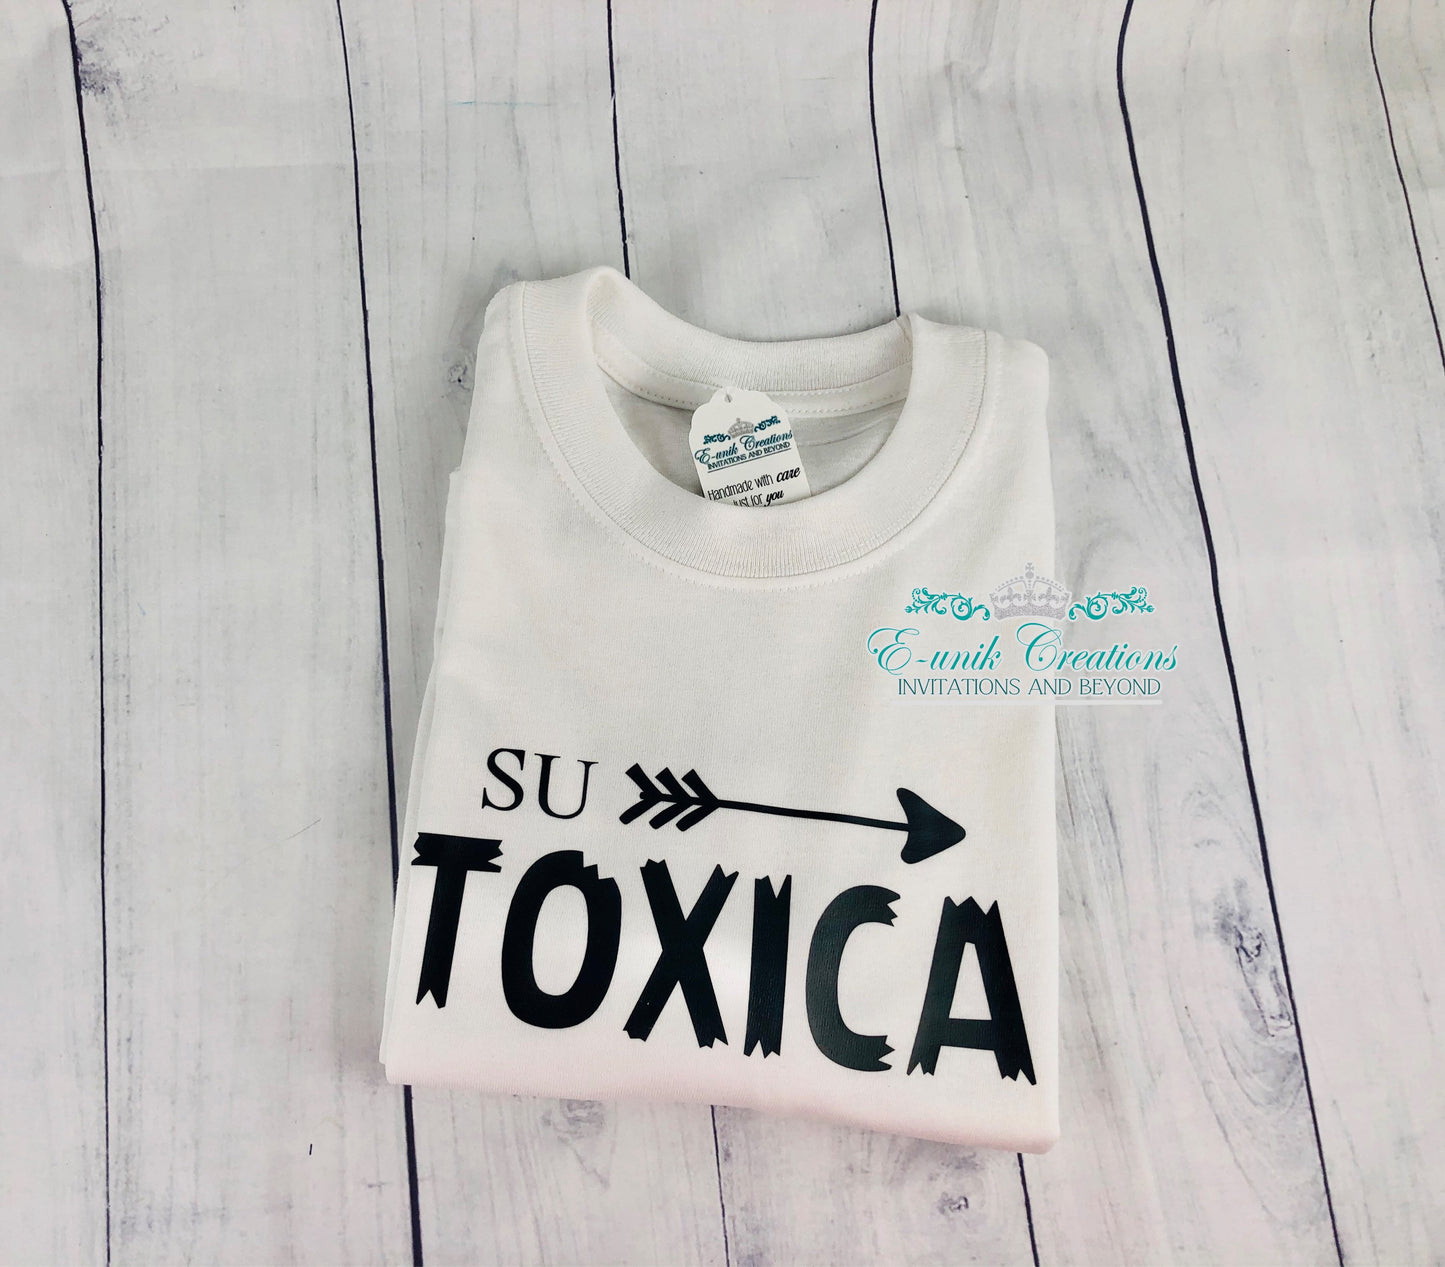 Su Toxica Shirt, Su Vistima Shirt,Funny Couple Shirts